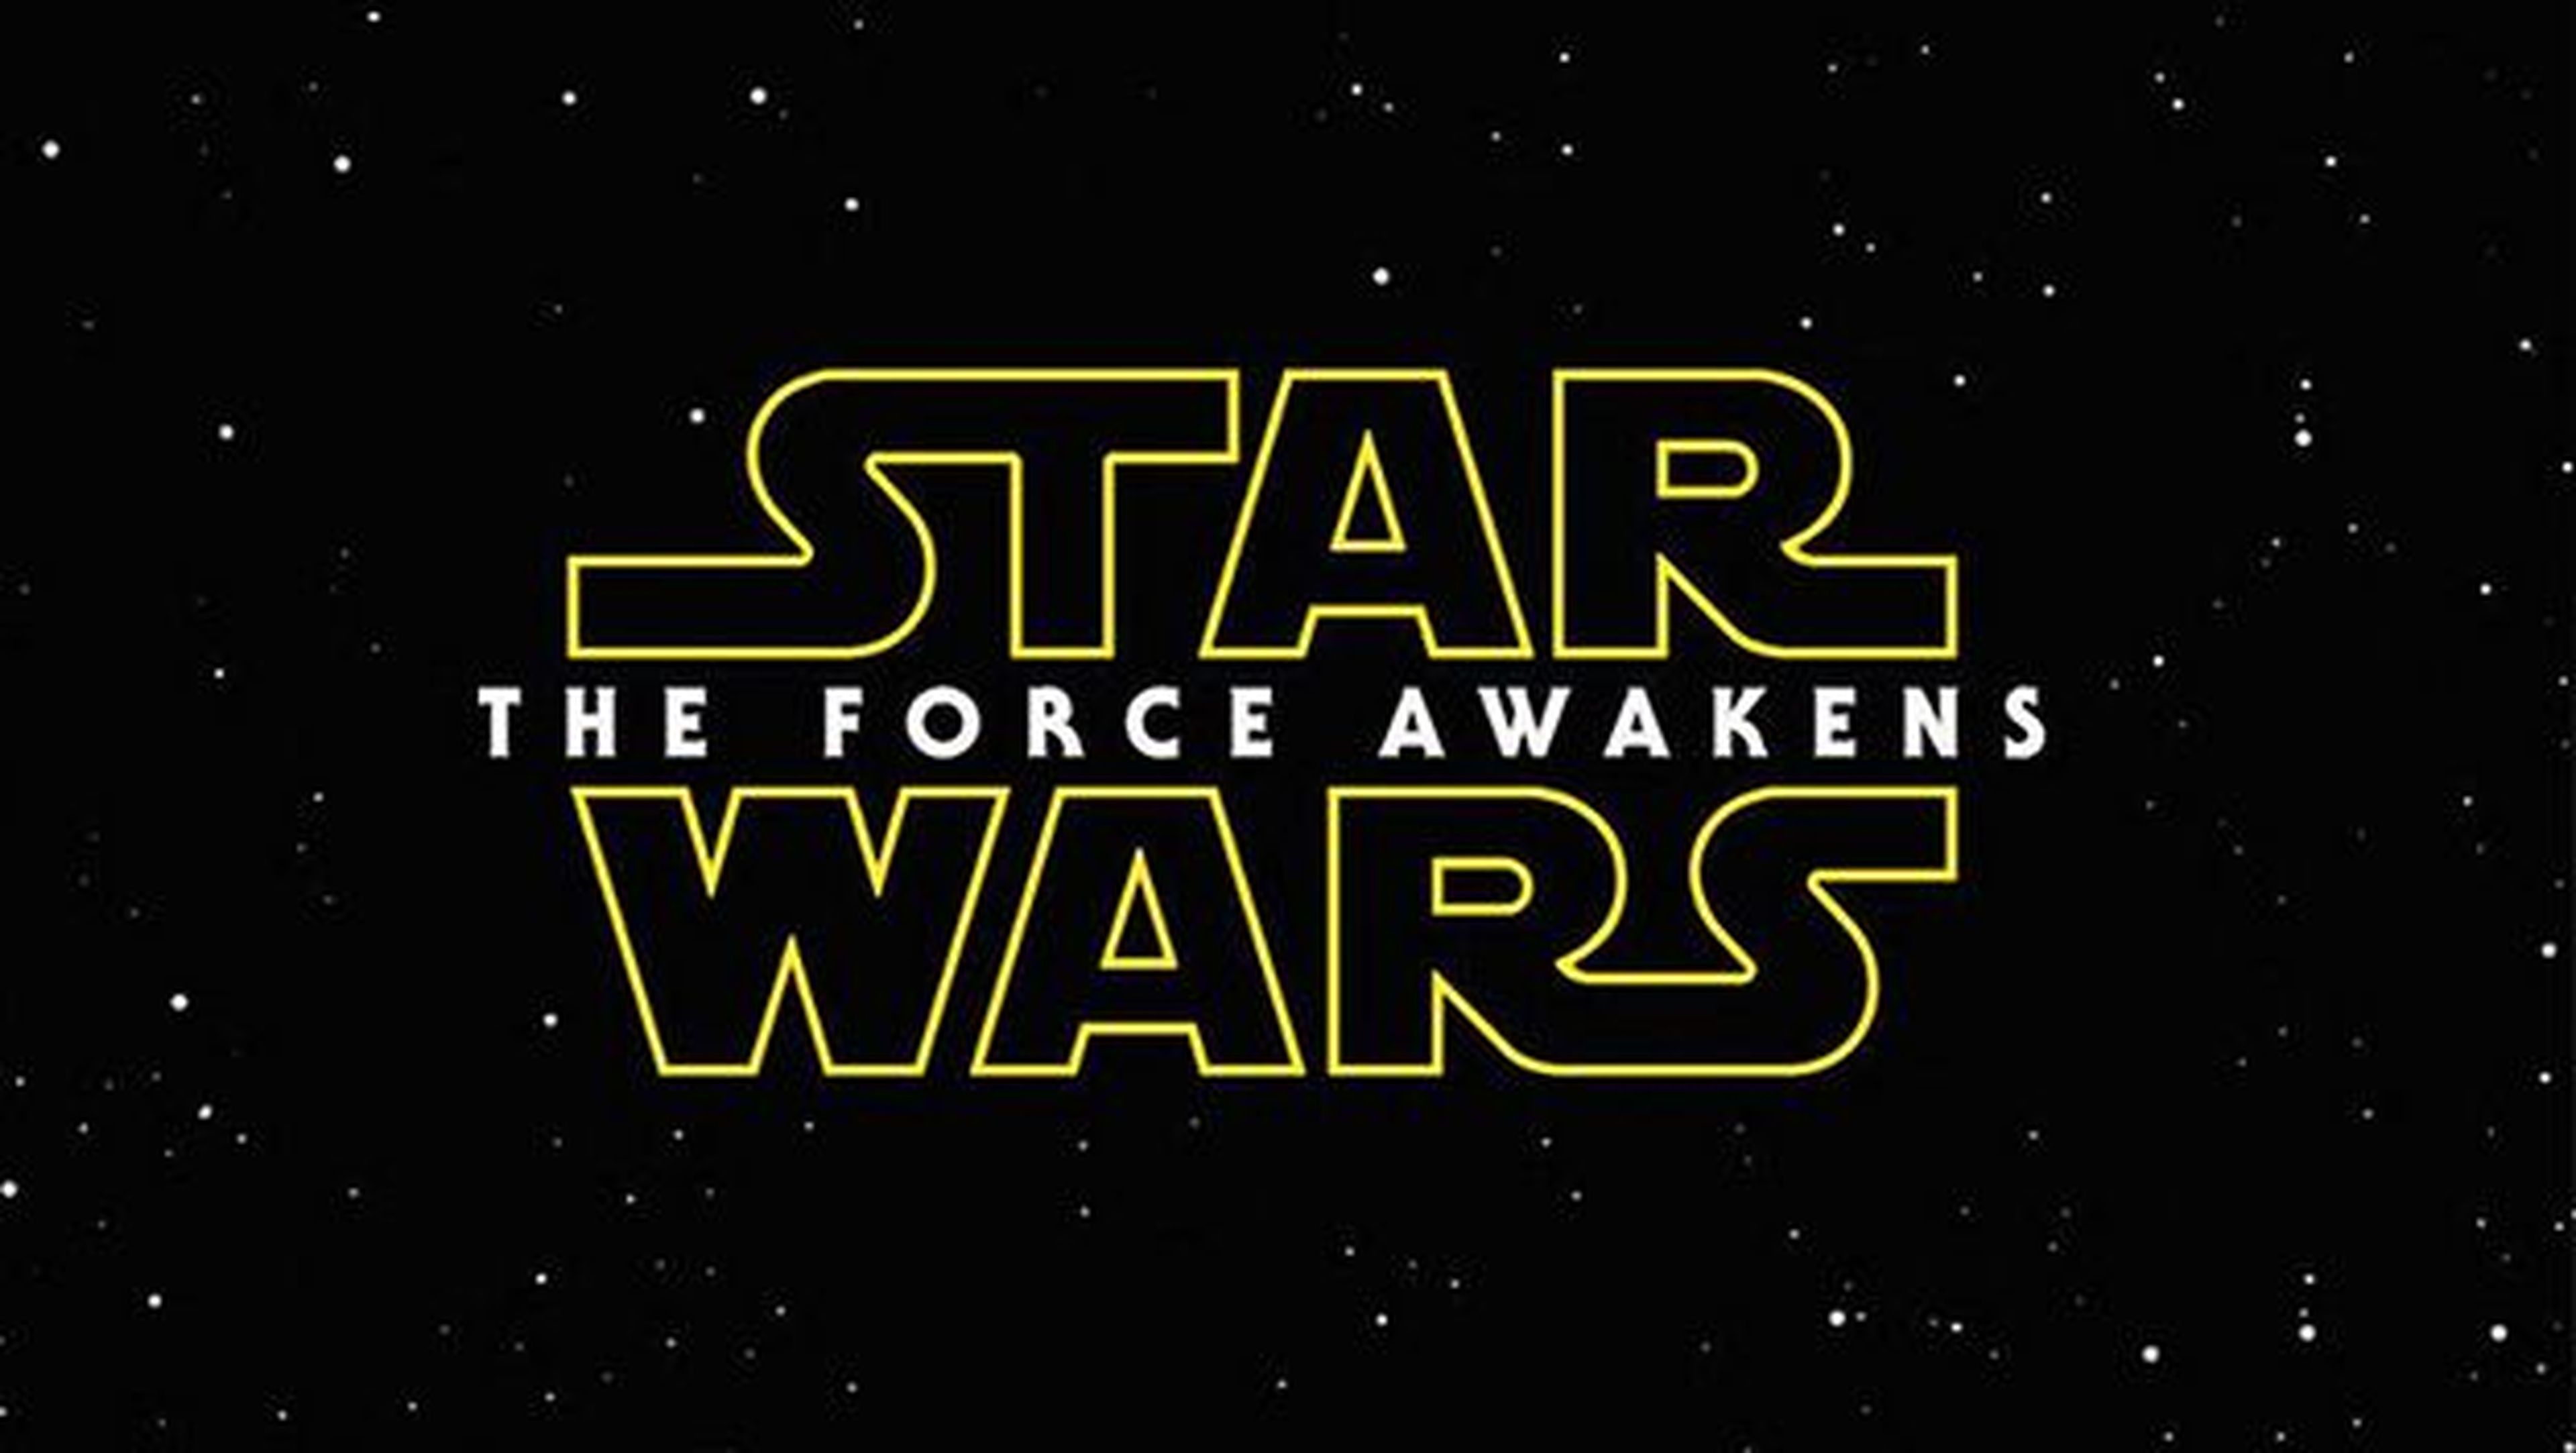 El primer trailer de Star Wars Episodio VII: The Force Awakens se estrena este viernes, en el Black Friday